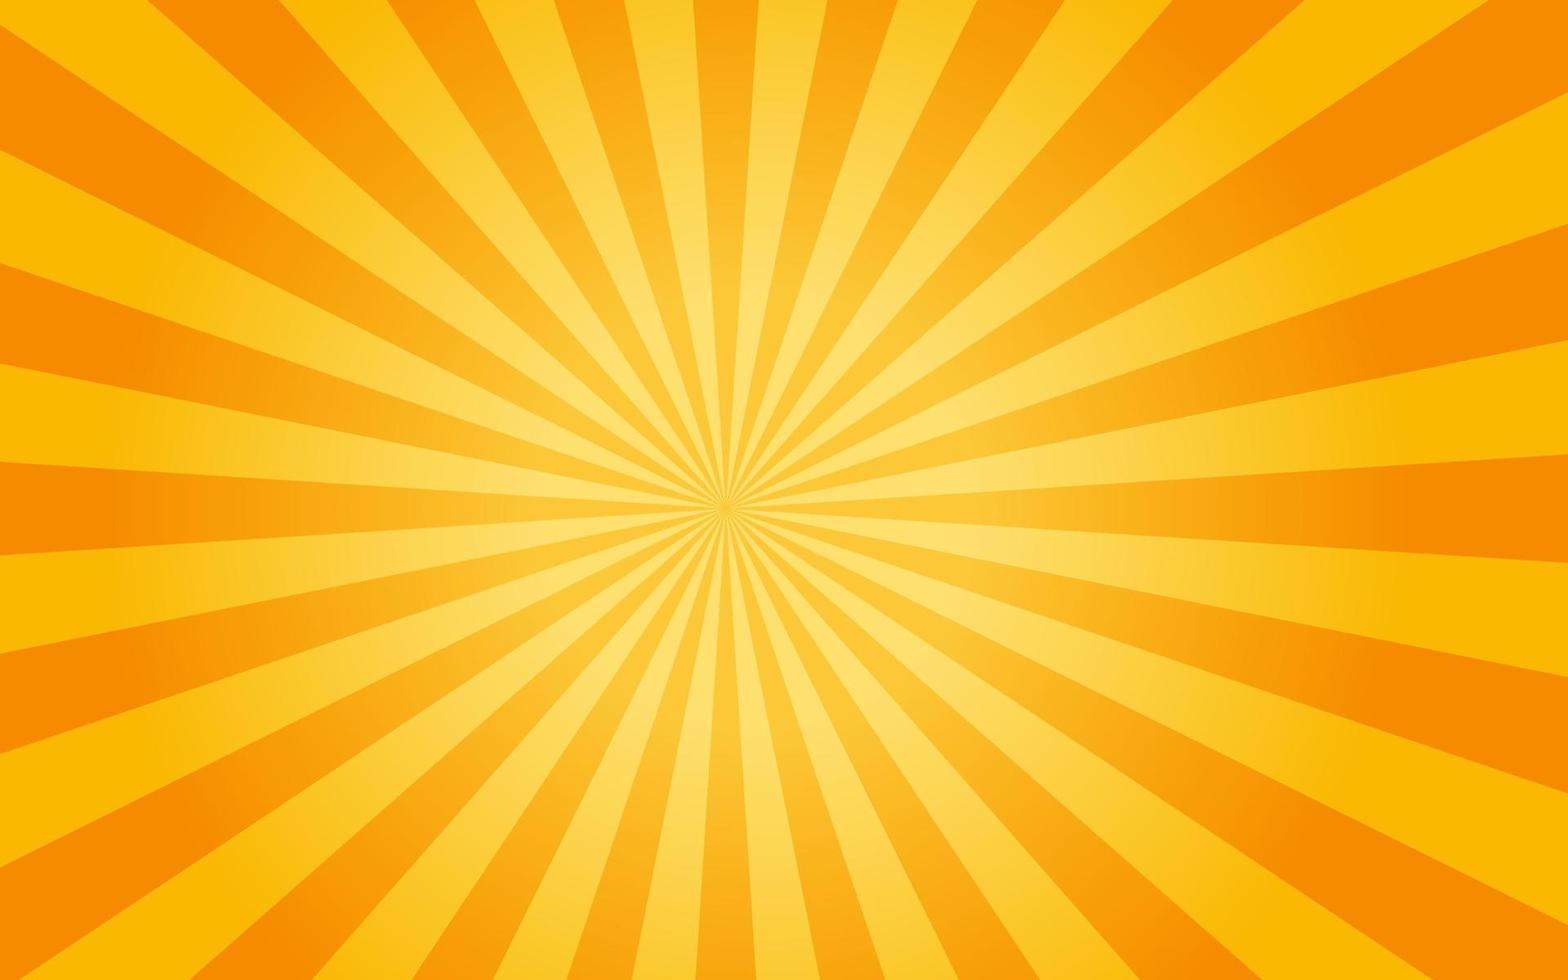 zonnestralen retro vintage stijl op gele achtergrond, sunburst patroon achtergrond. stralen. zomer banner vectorillustratie vector